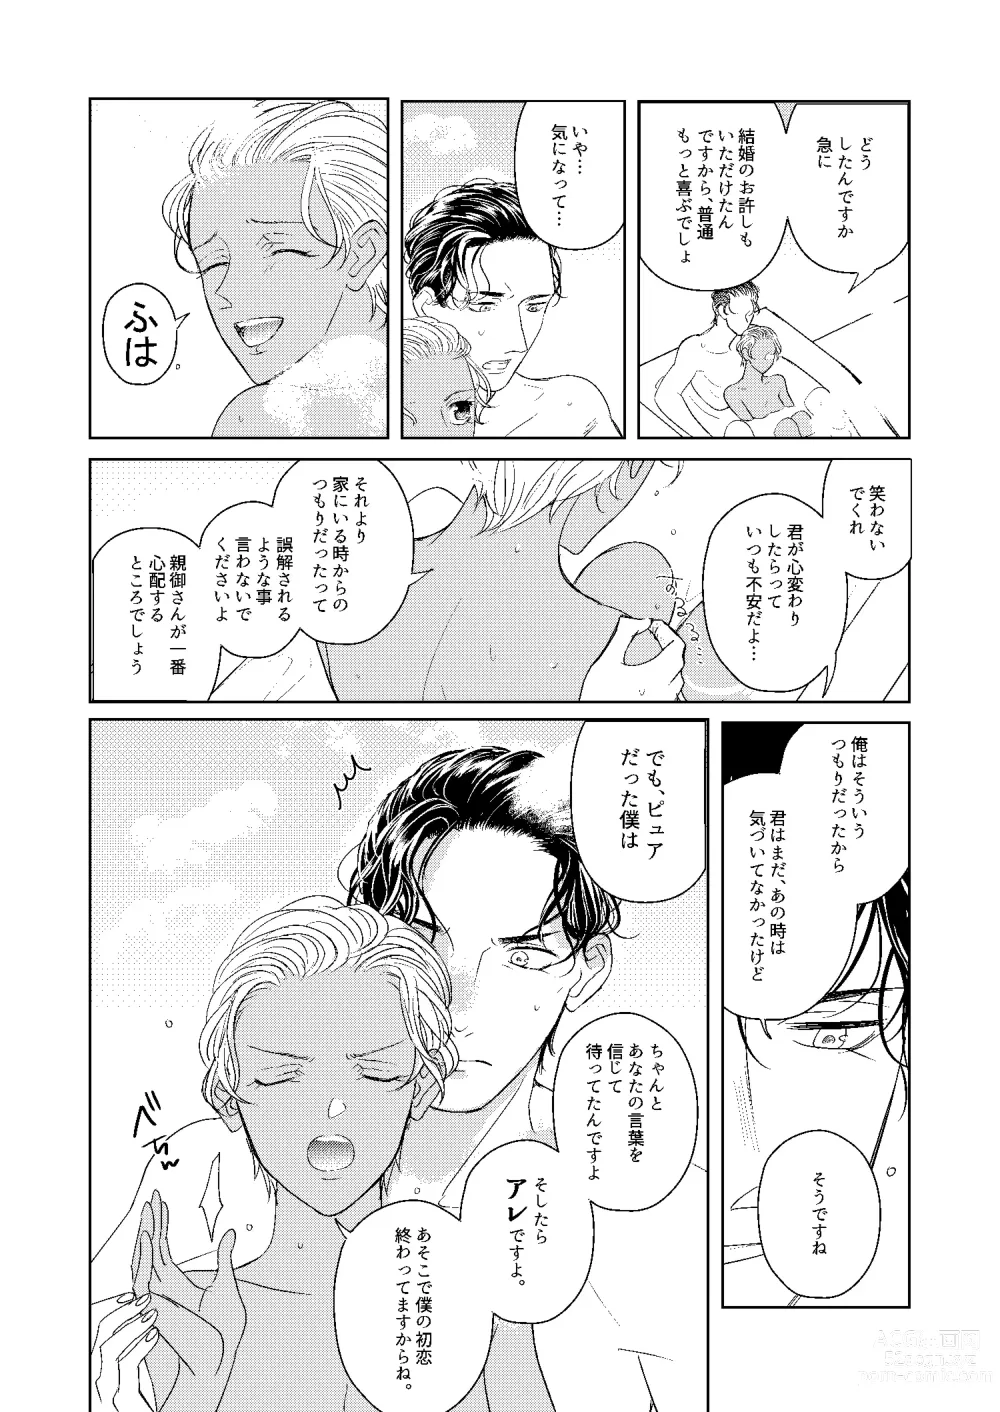 Page 99 of doujinshi Hatsukoi 2006